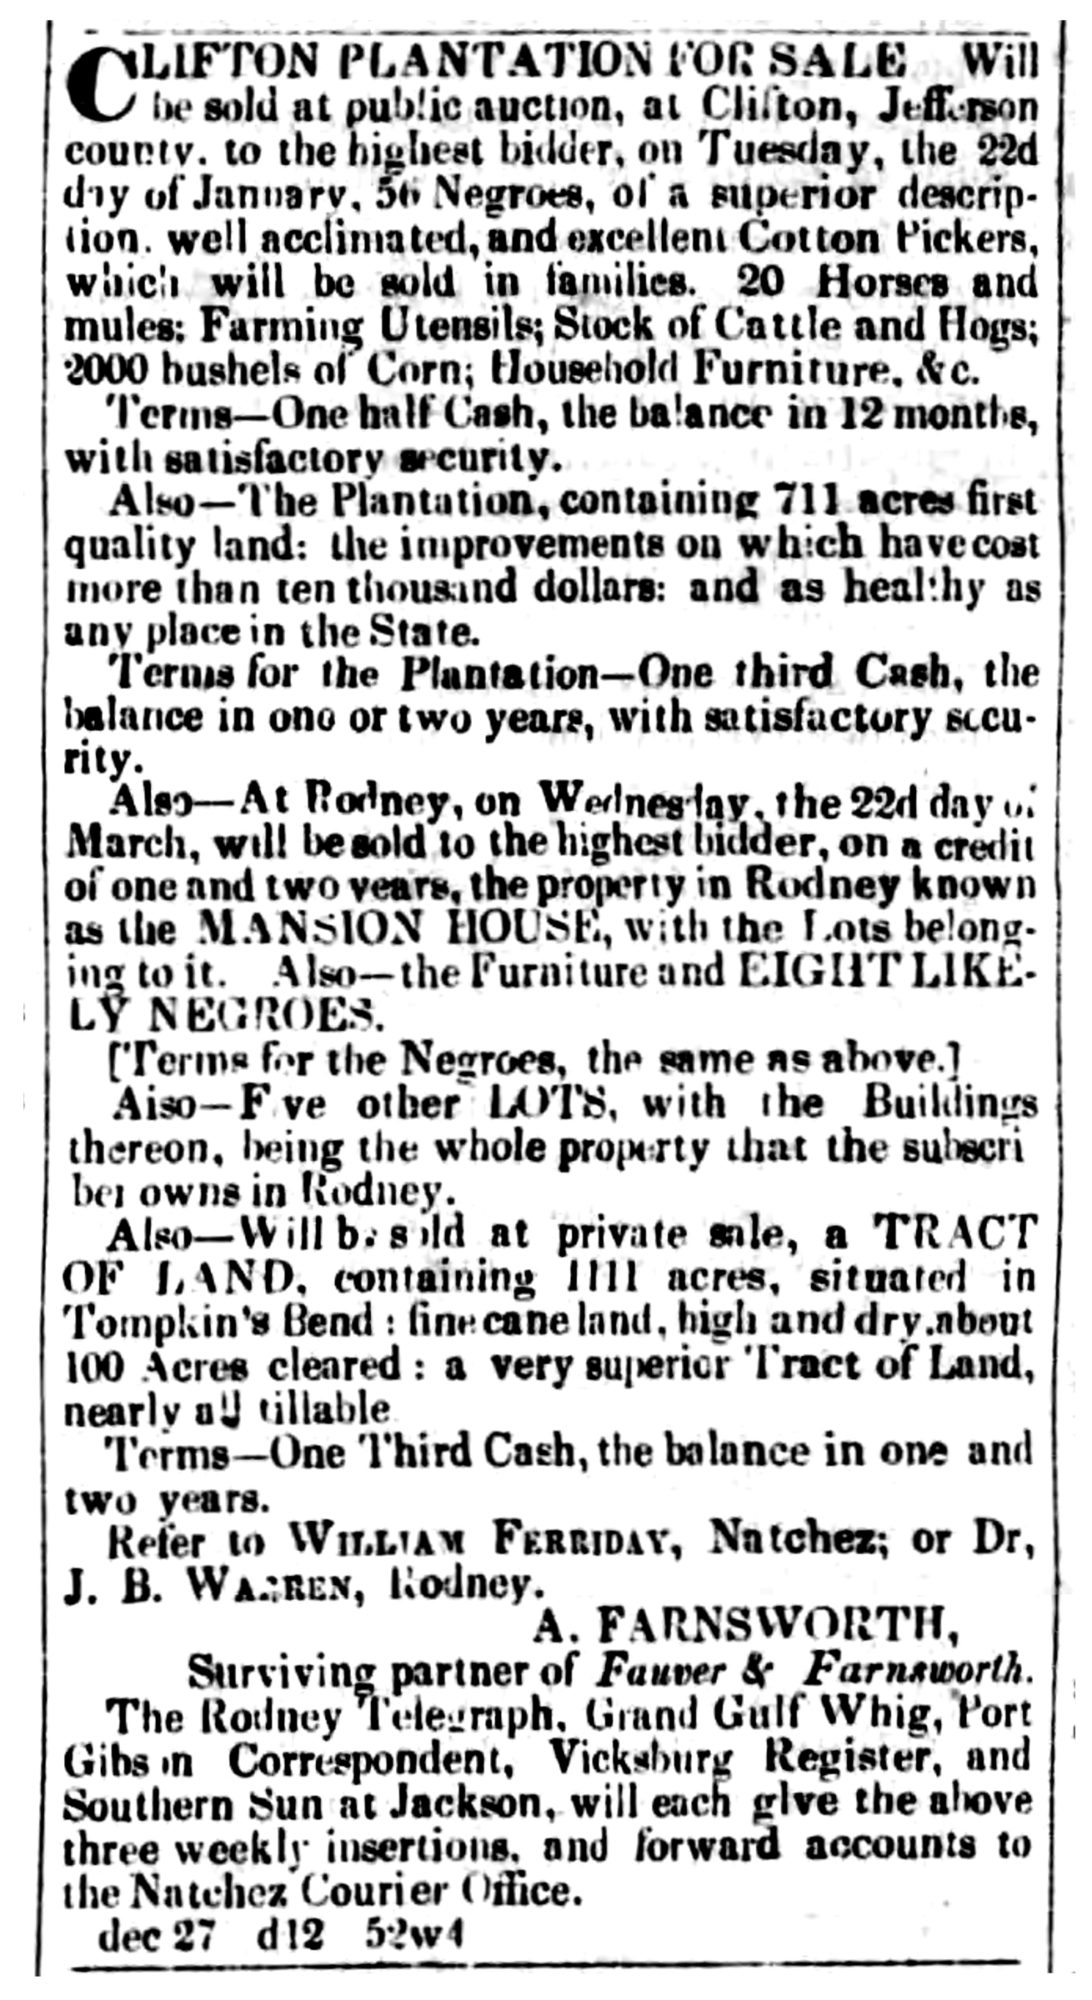 The Natchez Daily Courier (Natchez, MS) Mon Jan 21, 1839, p1, Clifton Plantation for Sale